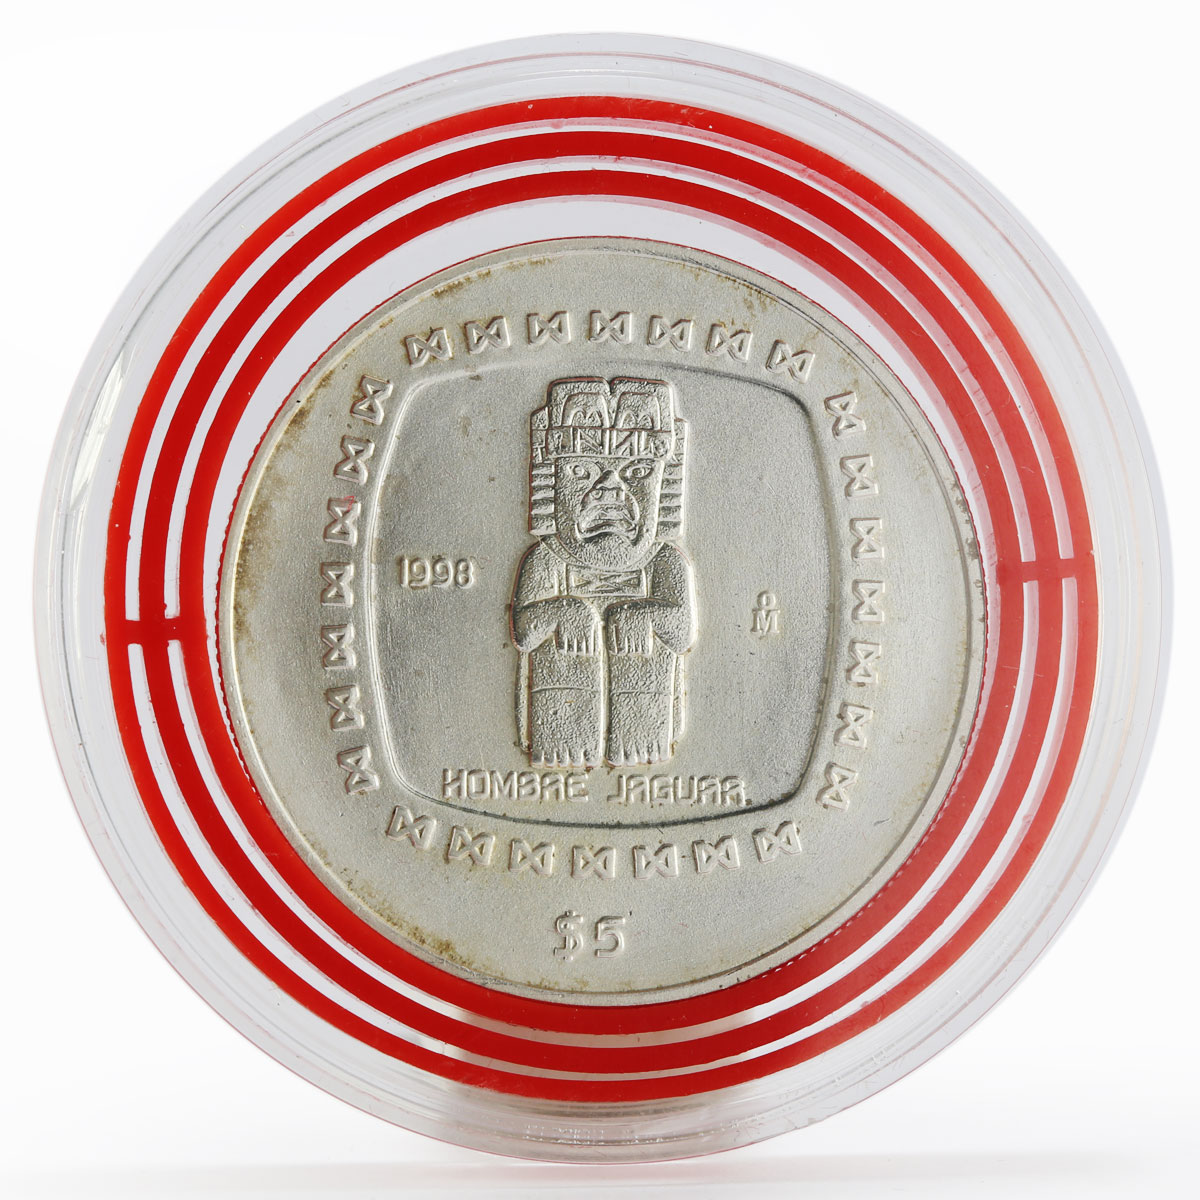 Mexico 5 pesos Hombre Jaguar Sculpture silver coin 1998